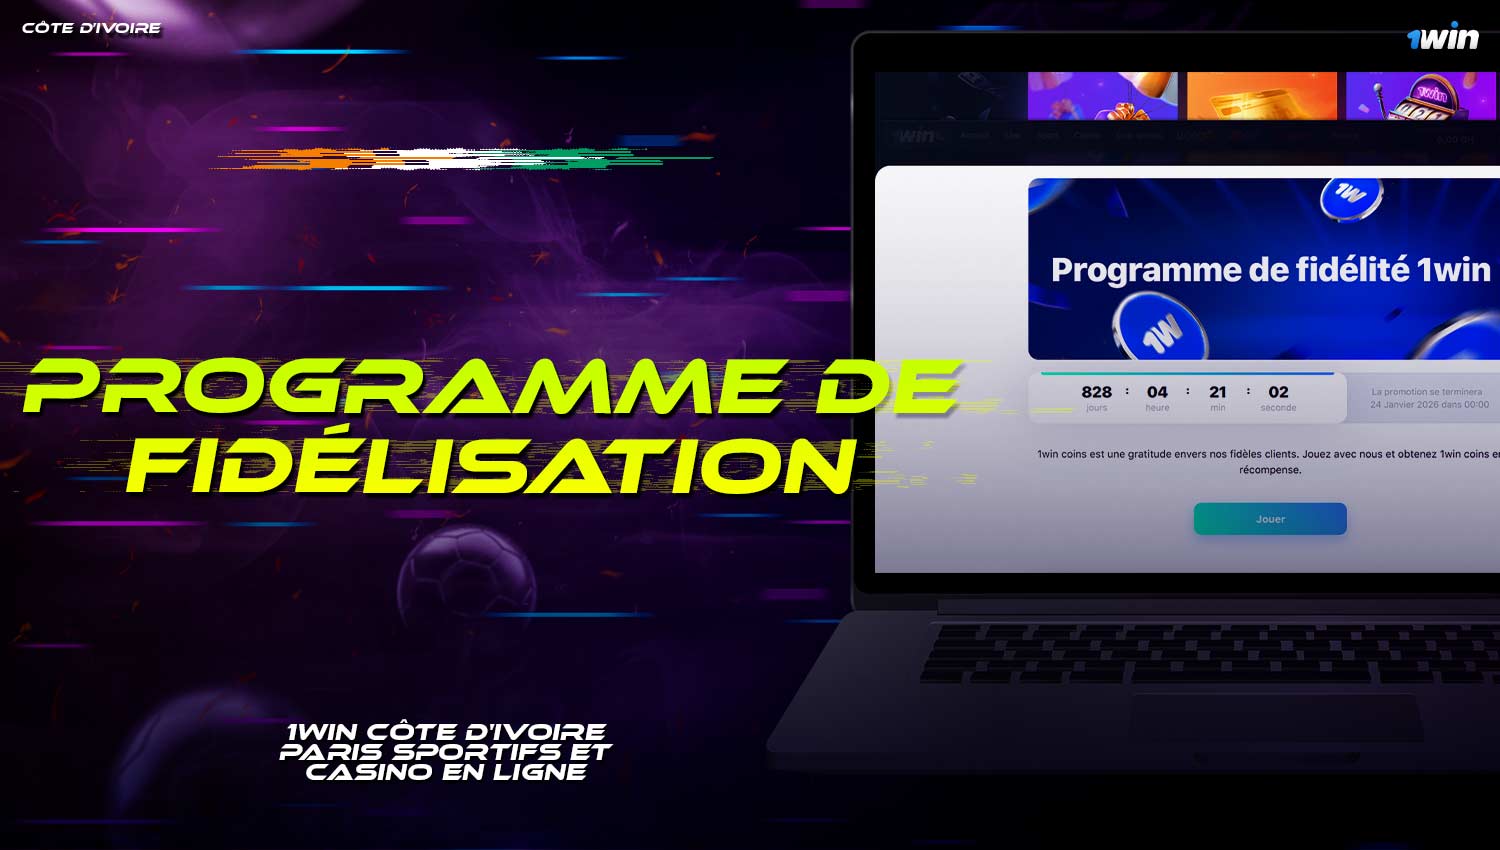 Découvrez le programme de fidélité disponible sur la plateforme 1win pour les joueurs de Côte d'Ivoire.